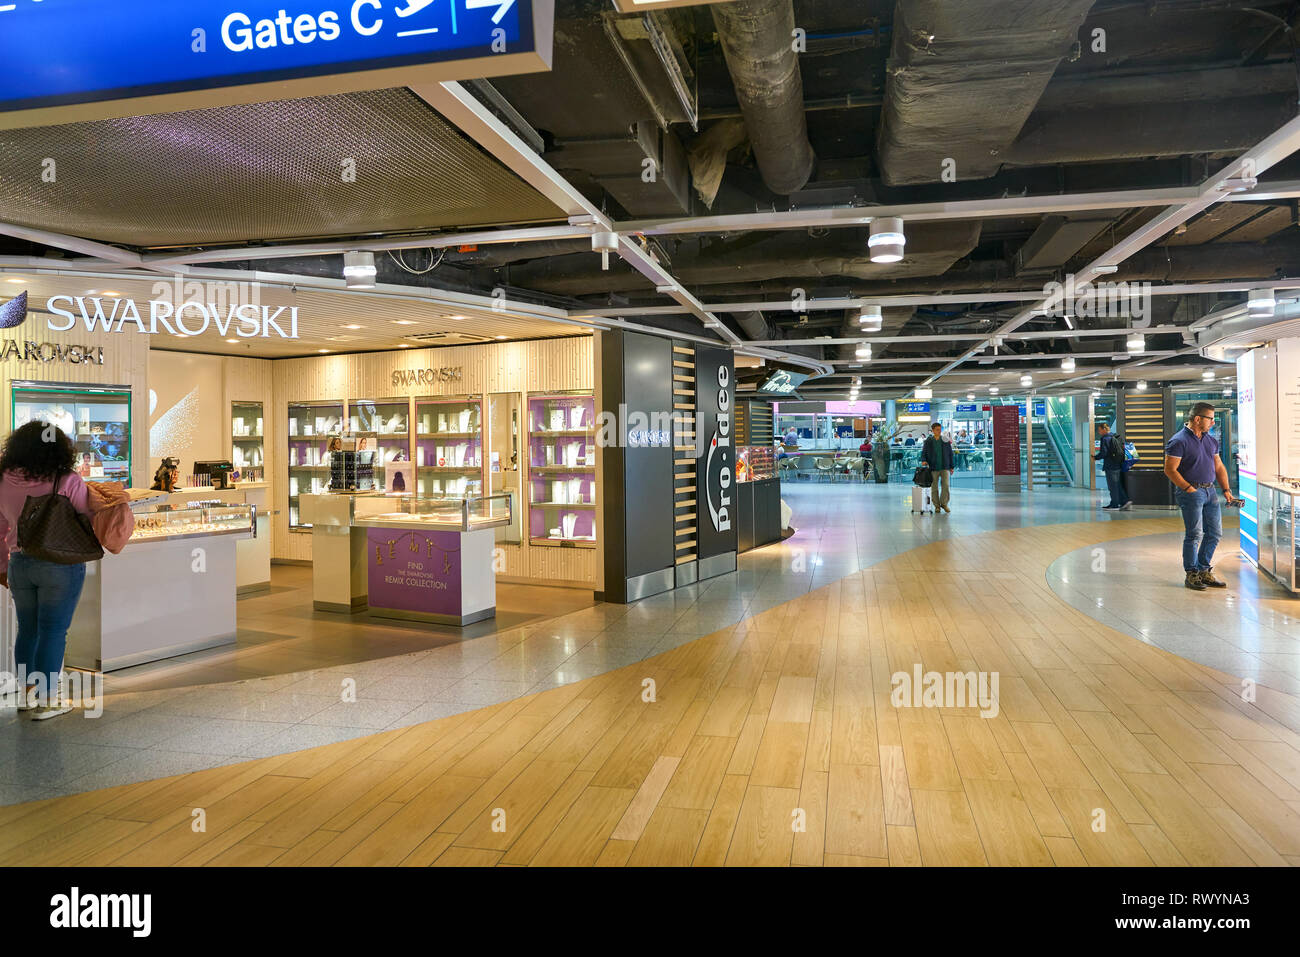 Düsseldorf, Deutschland - ca. September 2018: Swarovski Shop im Flughafen  Düsseldorf Stockfotografie - Alamy